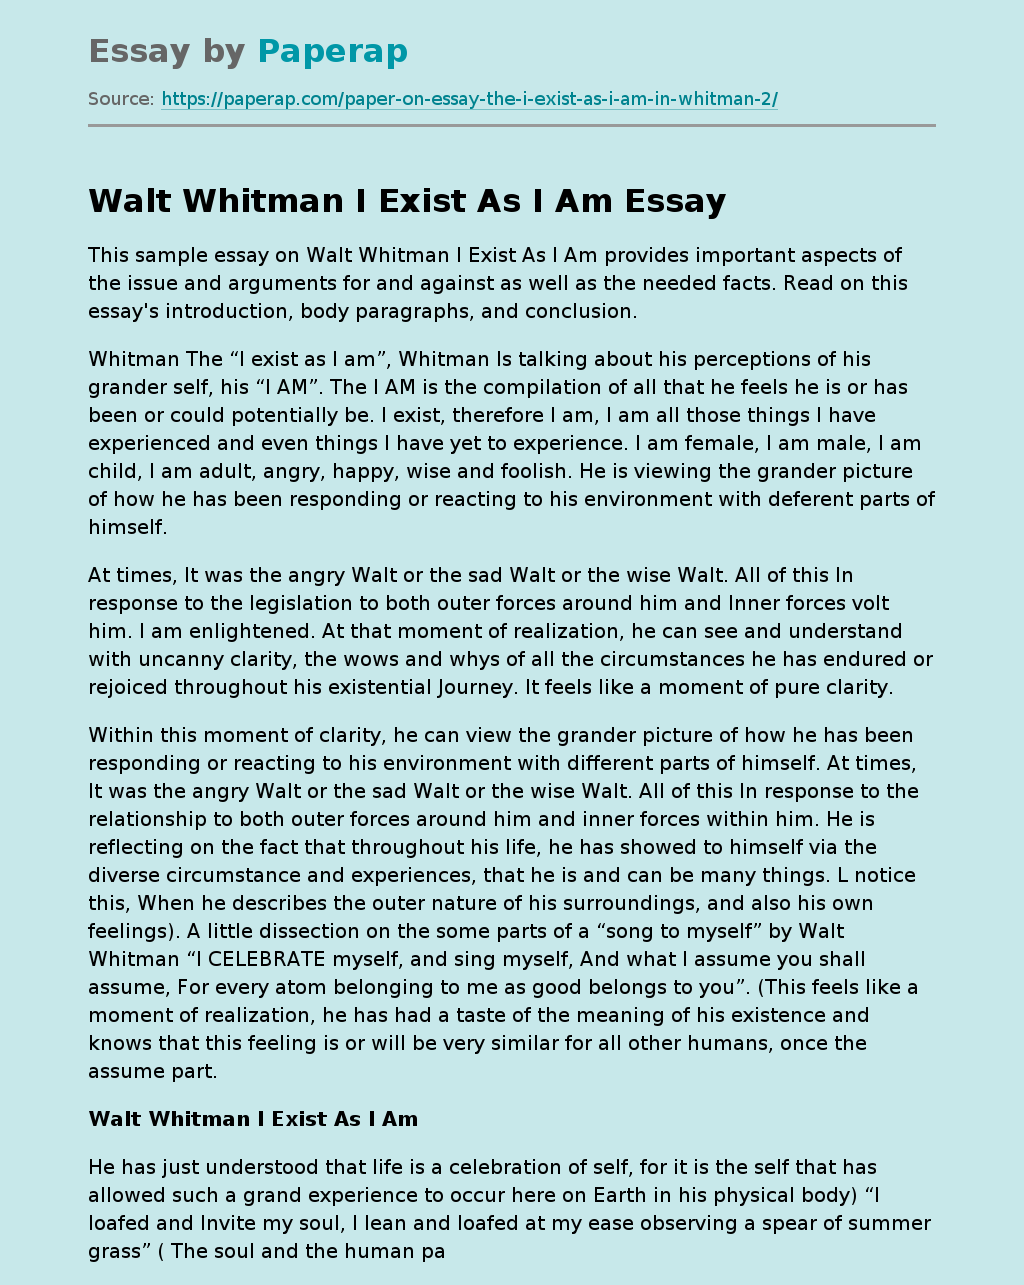 Walt Whitman I Exist As I Am